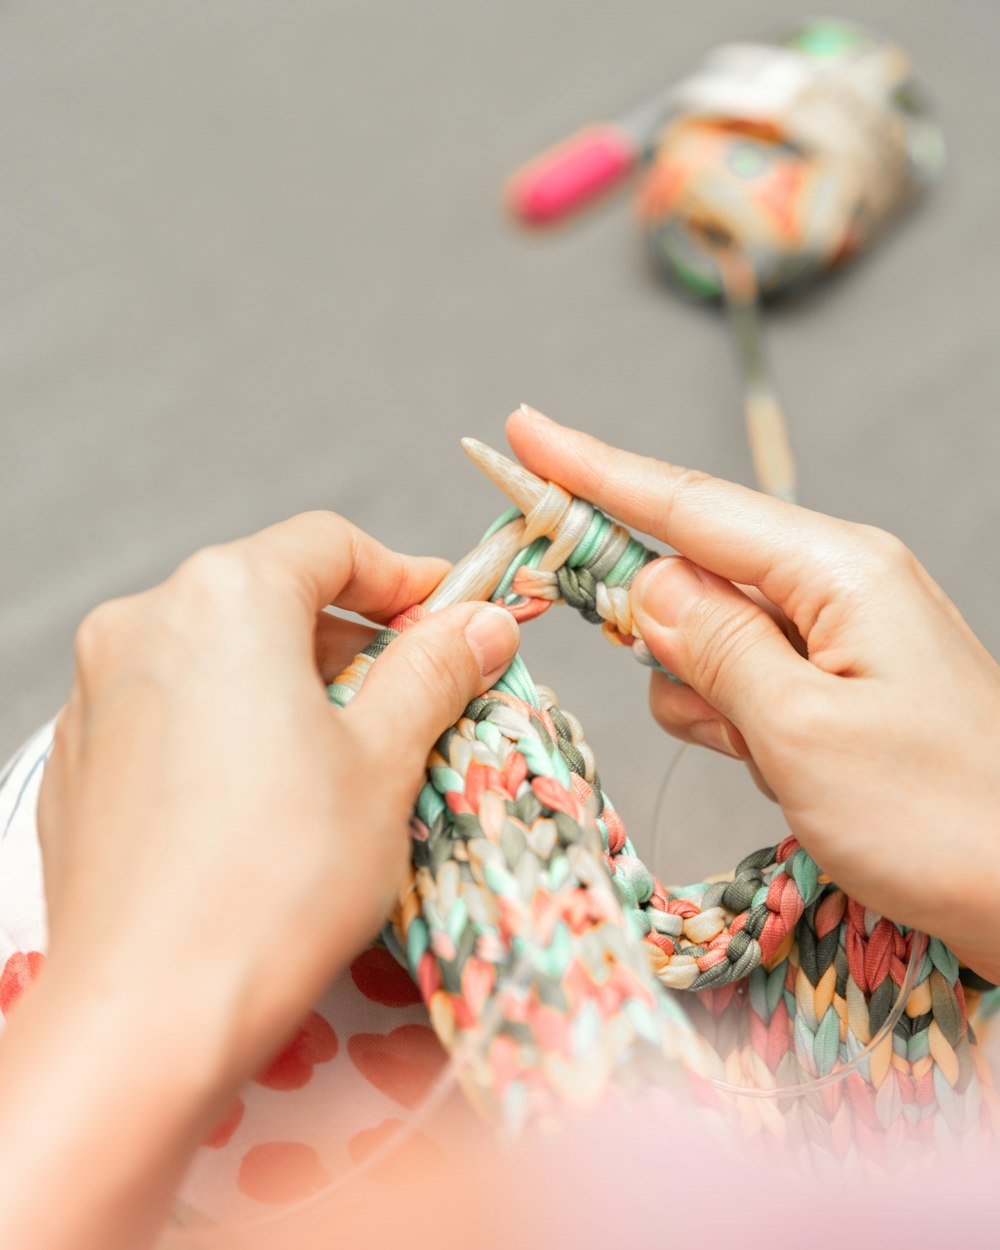 Una donna sta lavorando a maglia un pezzo di tessuto